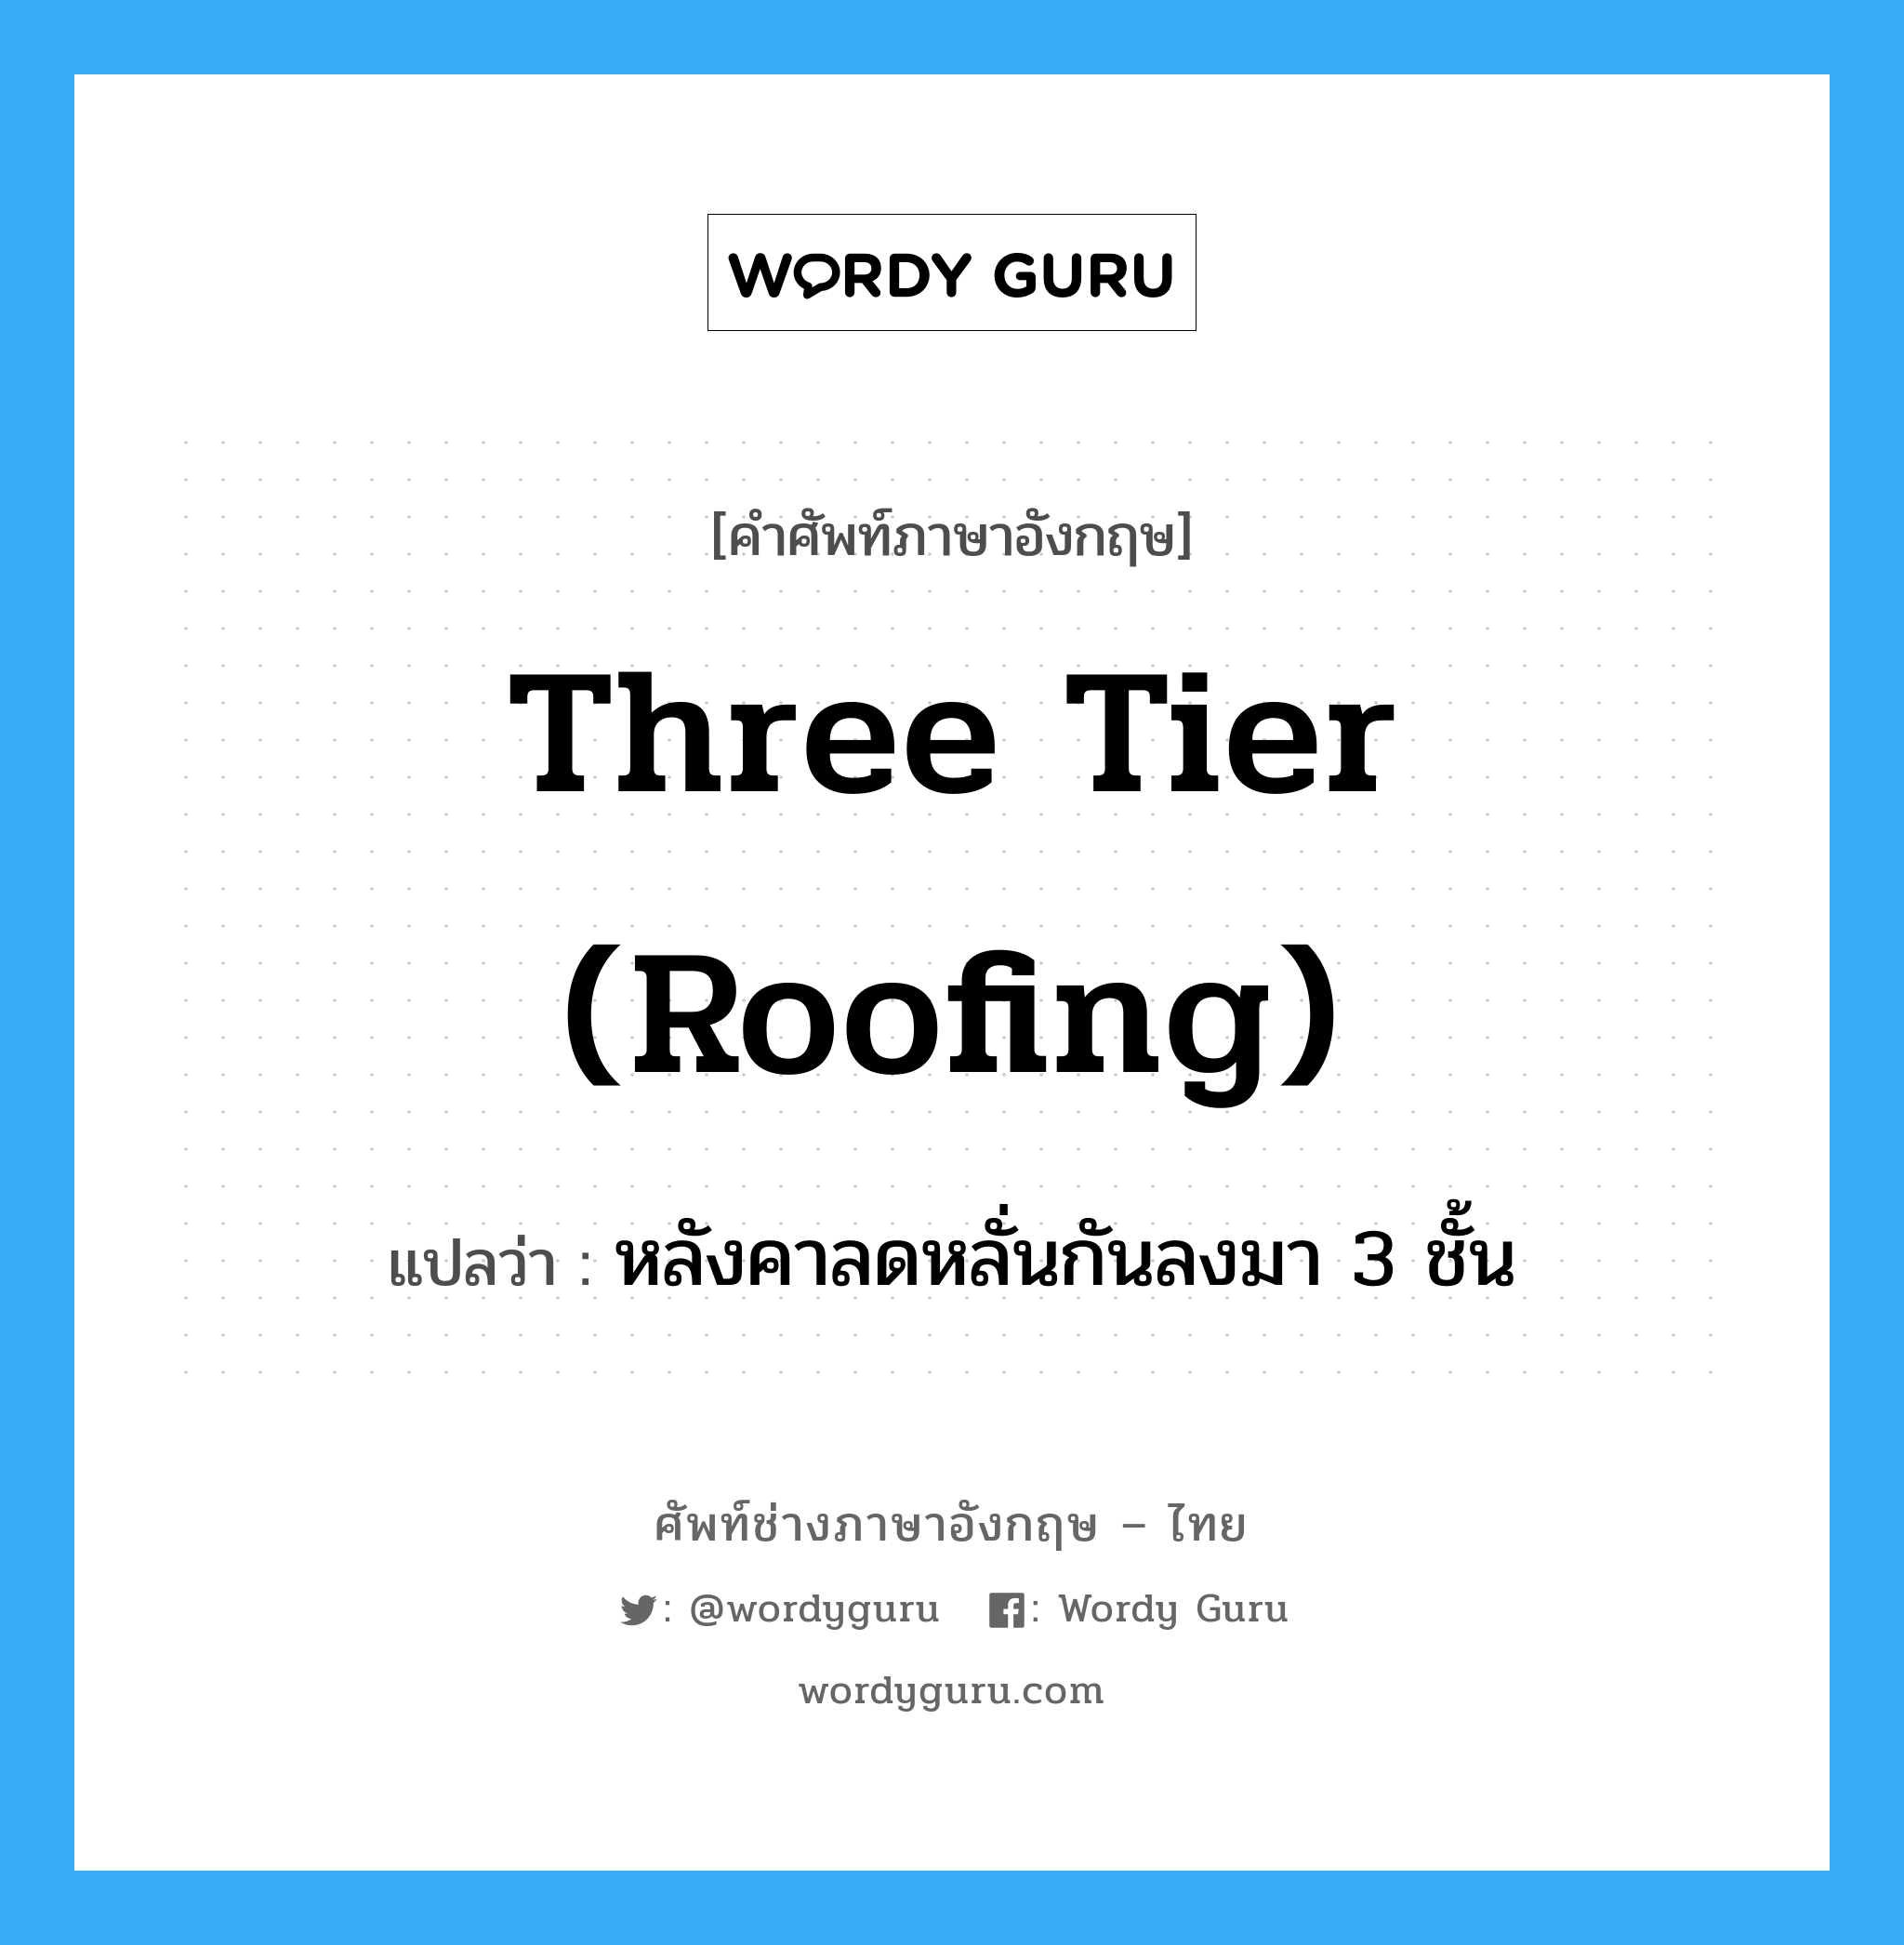 three tier (roofing) แปลว่า?, คำศัพท์ช่างภาษาอังกฤษ - ไทย three tier (roofing) คำศัพท์ภาษาอังกฤษ three tier (roofing) แปลว่า หลังคาลดหลั่นกันลงมา 3 ชั้น